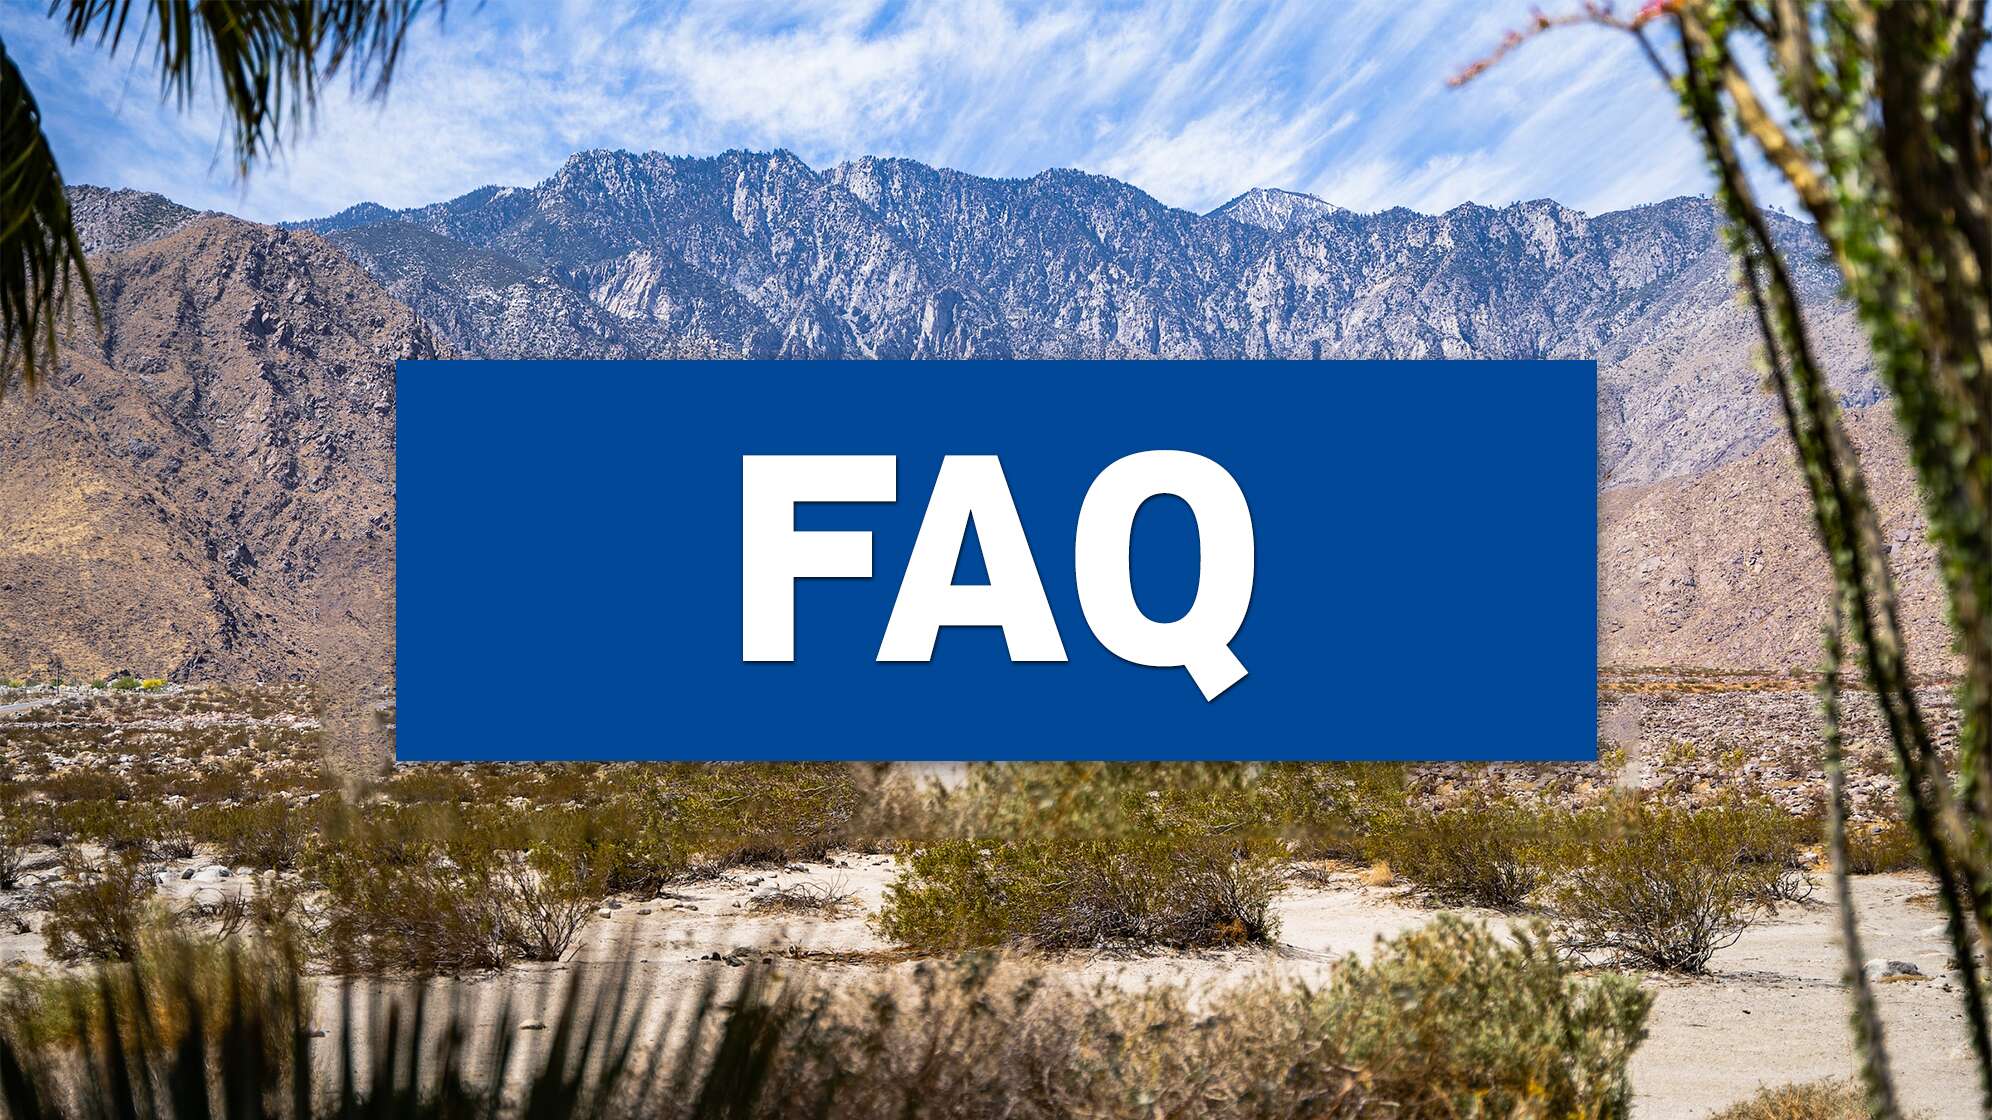 Ein Bild der Wüste im kalifornischen Coachella Valley mit Text: "FAQ"